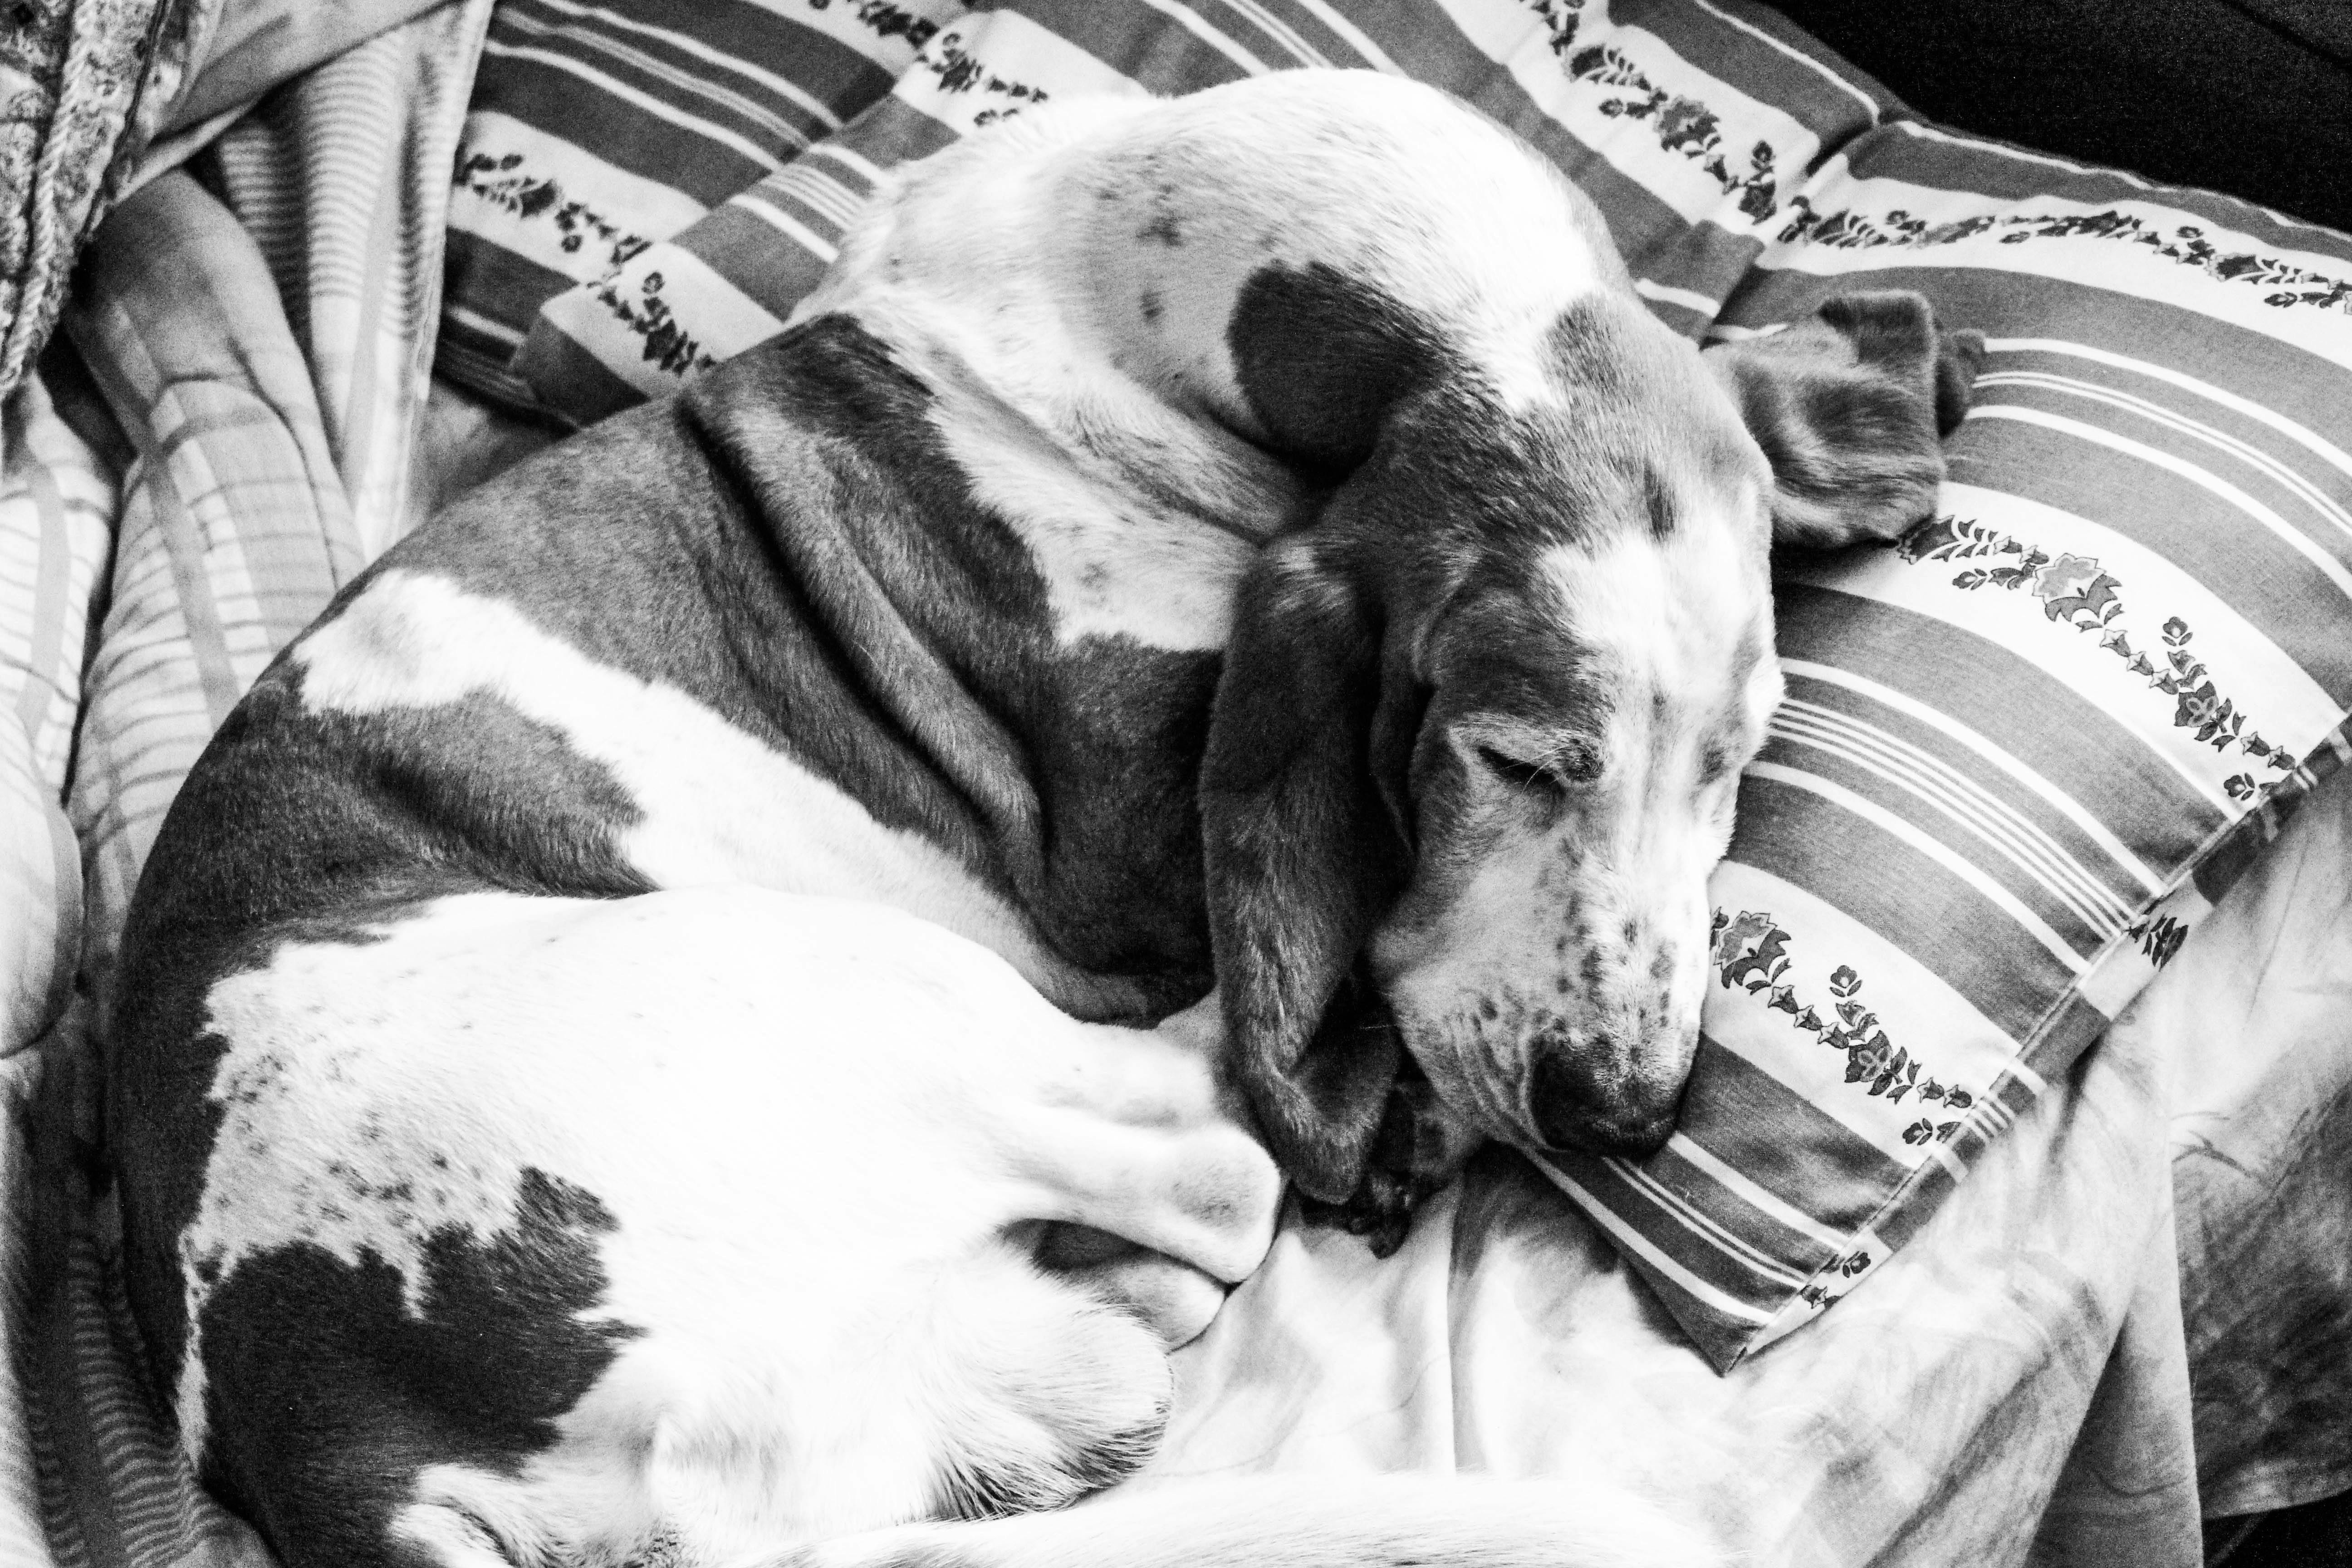 basset hound sleeping